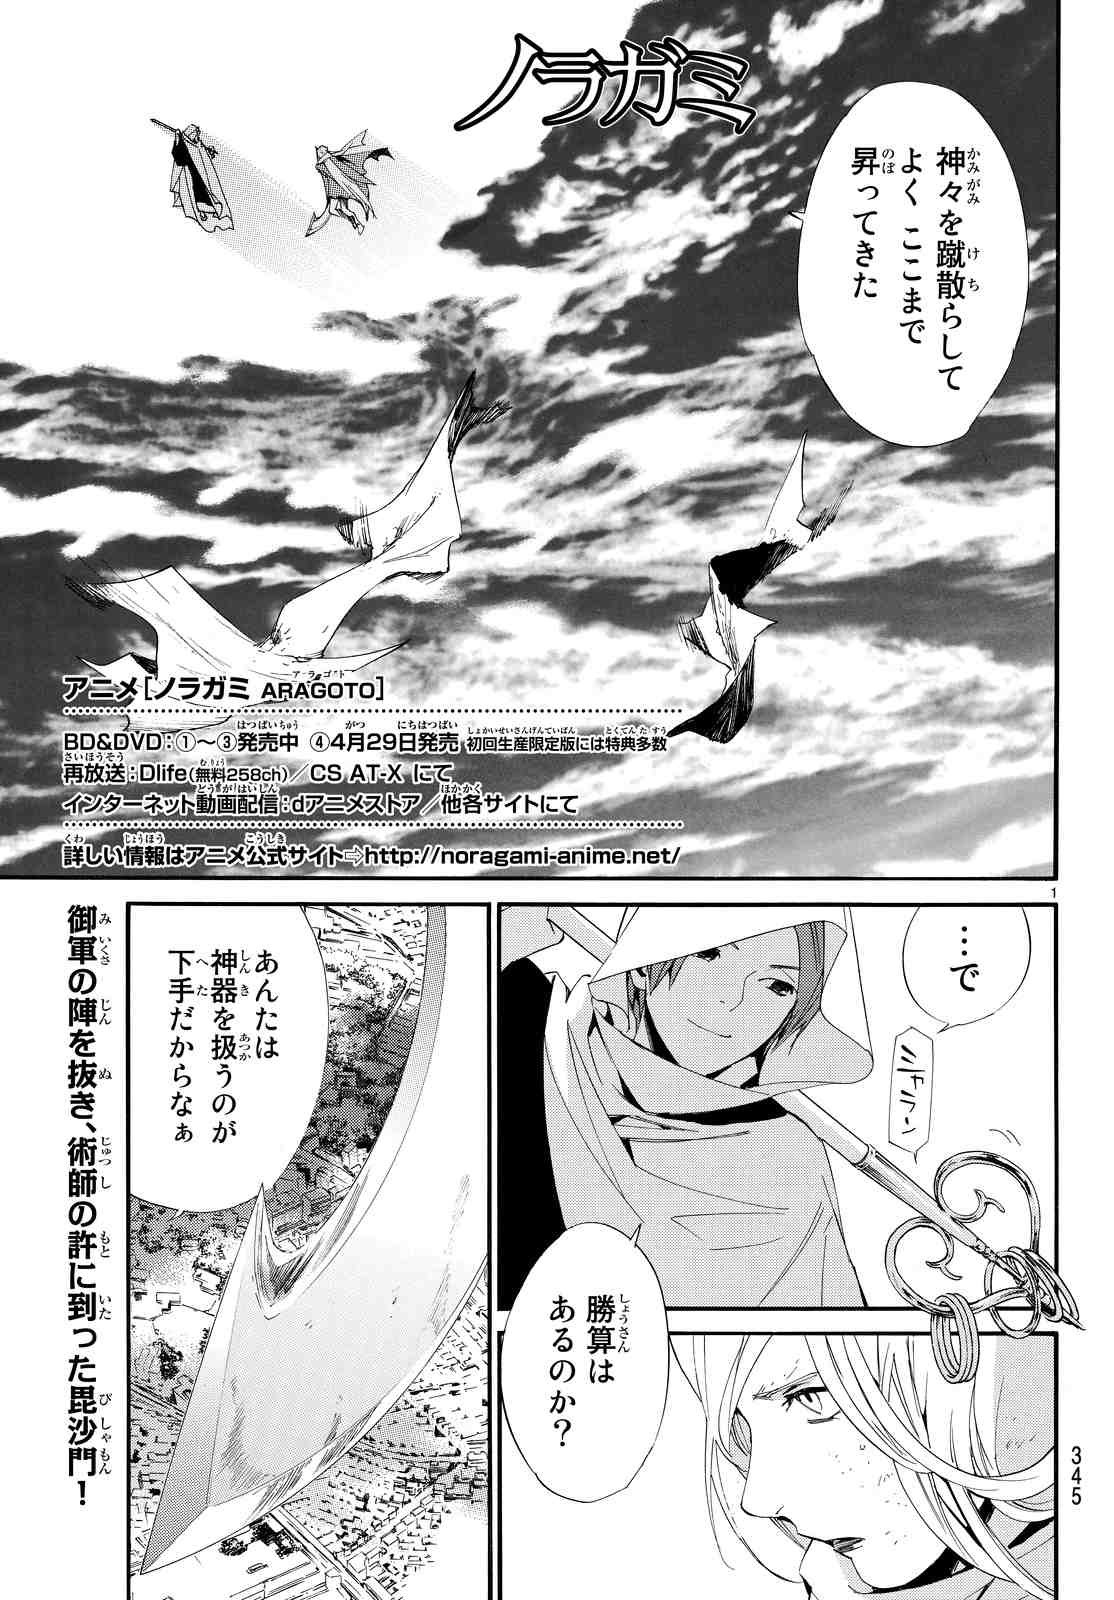 ノラガミ 8巻 漫画村 まんがまとめ 無料コミック漫画 ネタバレ